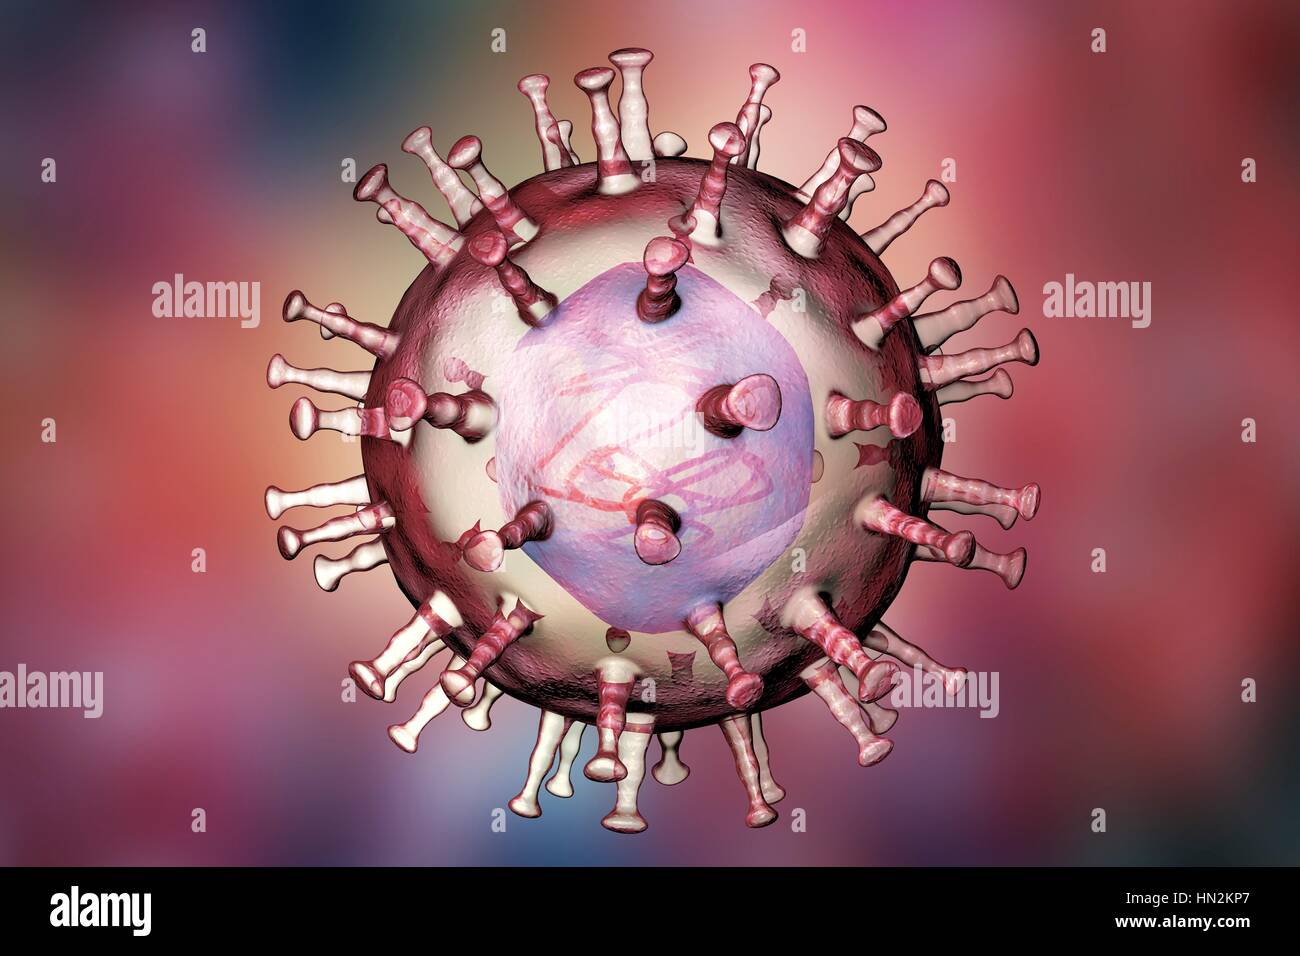 Afrikanische Schweinepest-Virus, Abbildung. Dieses Virus ist ein Mitglied der Iridovirus-Gruppe, die Afrikanische Schweinepest verursacht. Im Gegensatz zu anderen DNA-mit vertebrate Viren (mit Ausnahme der Pockenviren) repliziert der Iridovirus in die Wirtszelle Zytoplasma (die meisten anderen replizieren im Zellkern). Stockfoto